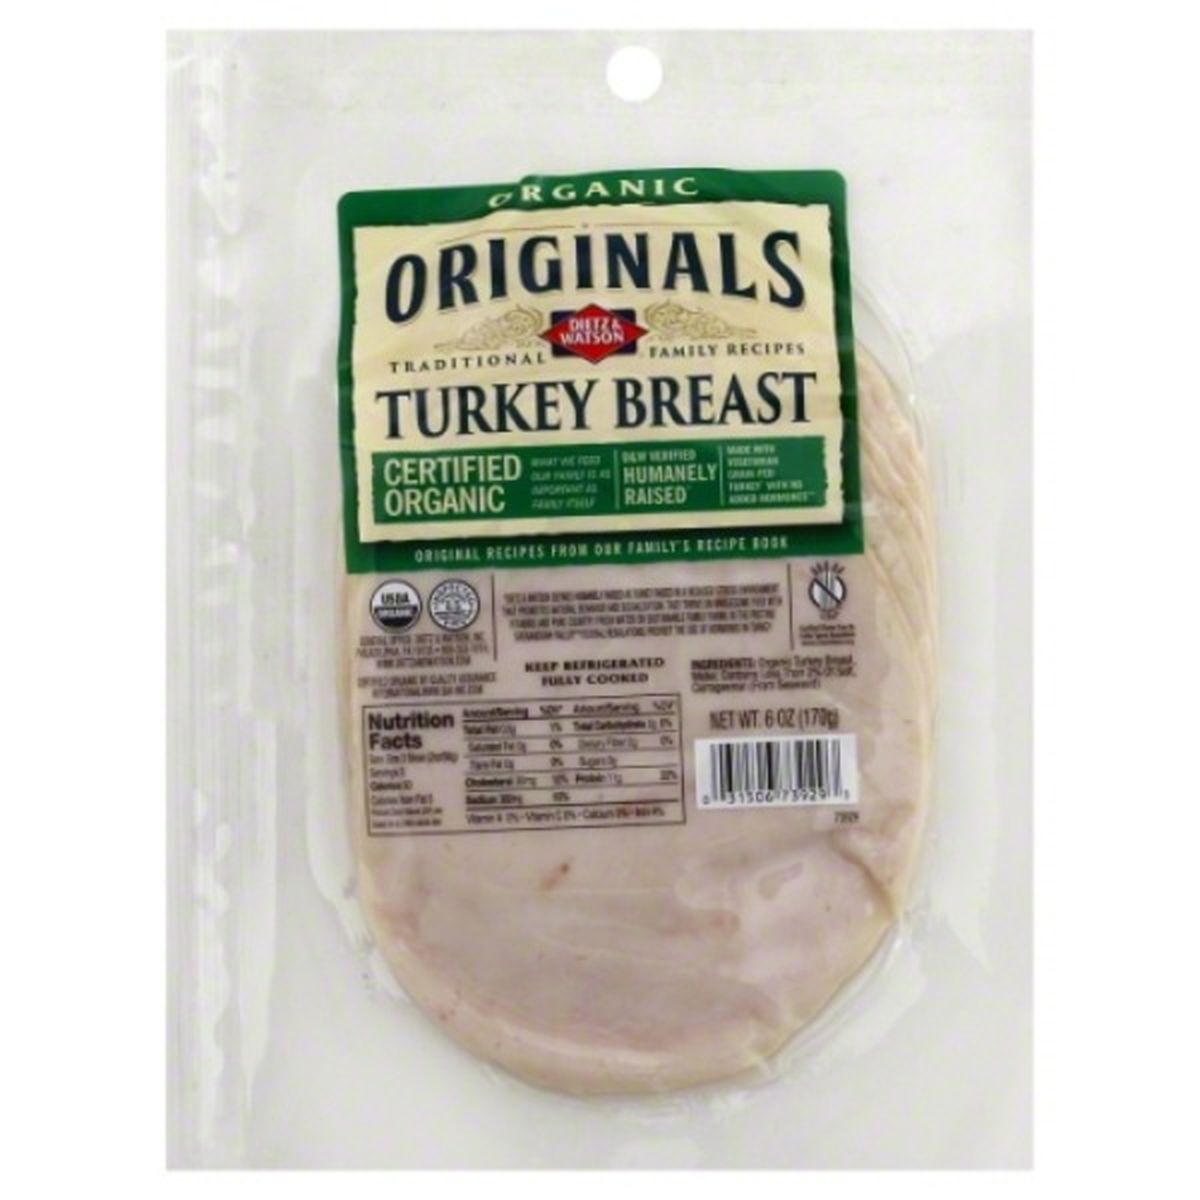 Calories in Dietz & Watson Originals Turkey Breast, Organic